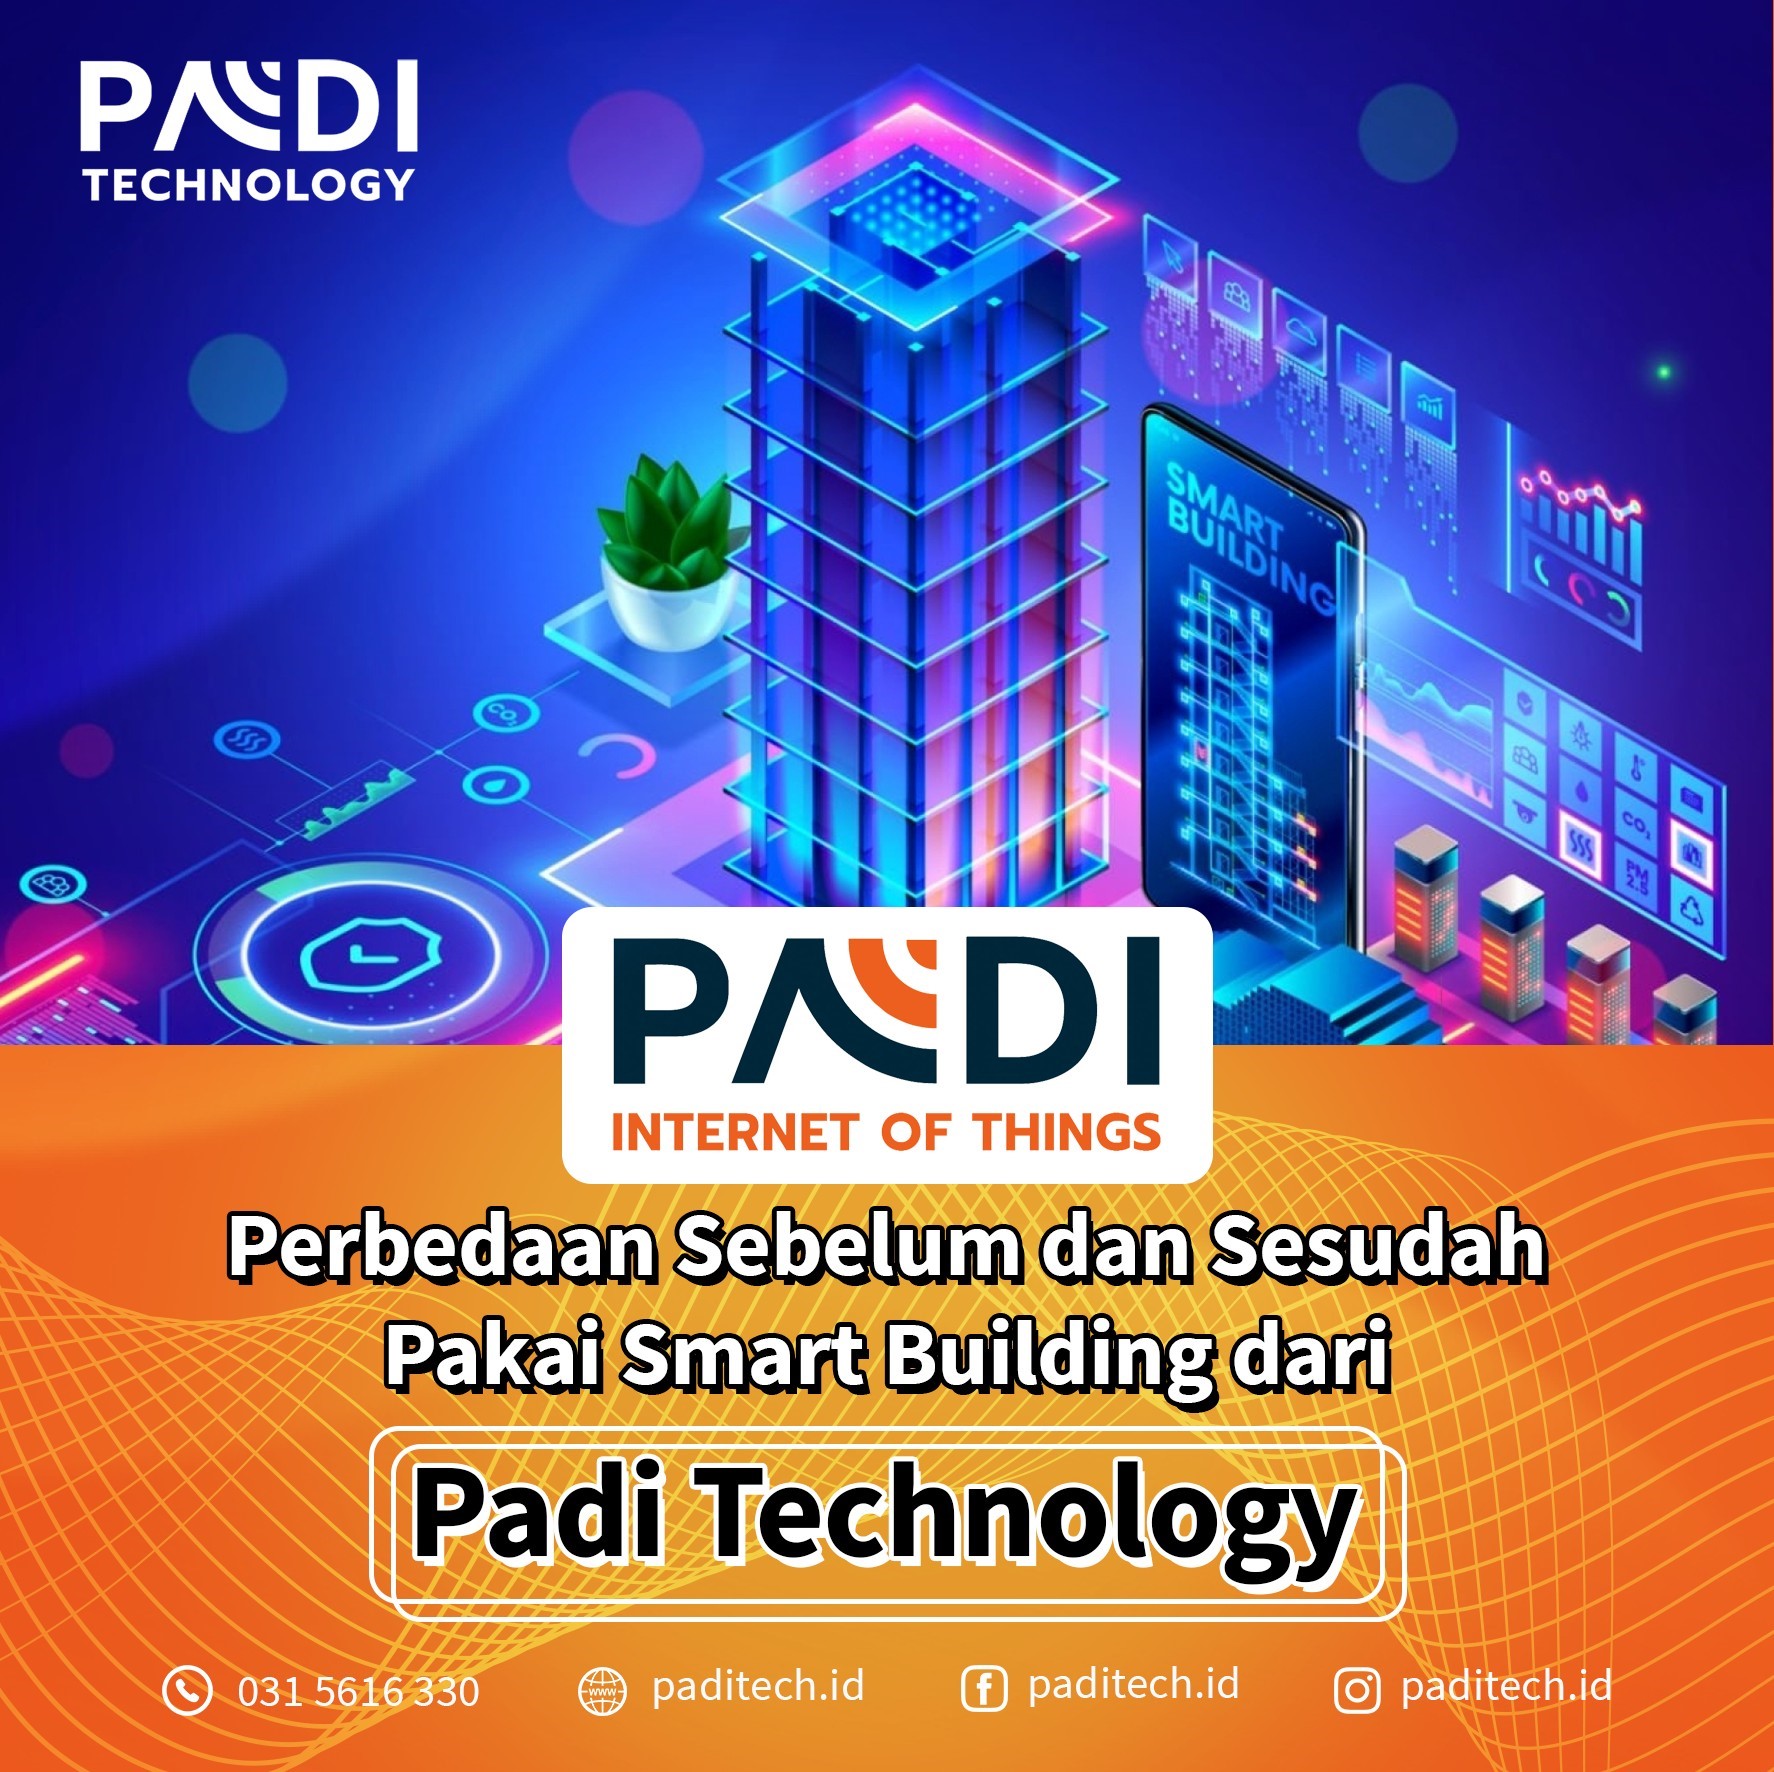 Membangun masa depan perusahaan bersama Padi Internet of Things (IoT) Rasakan perbedaan sebelum dan sesudah memakai Smart Building Padi Tech!